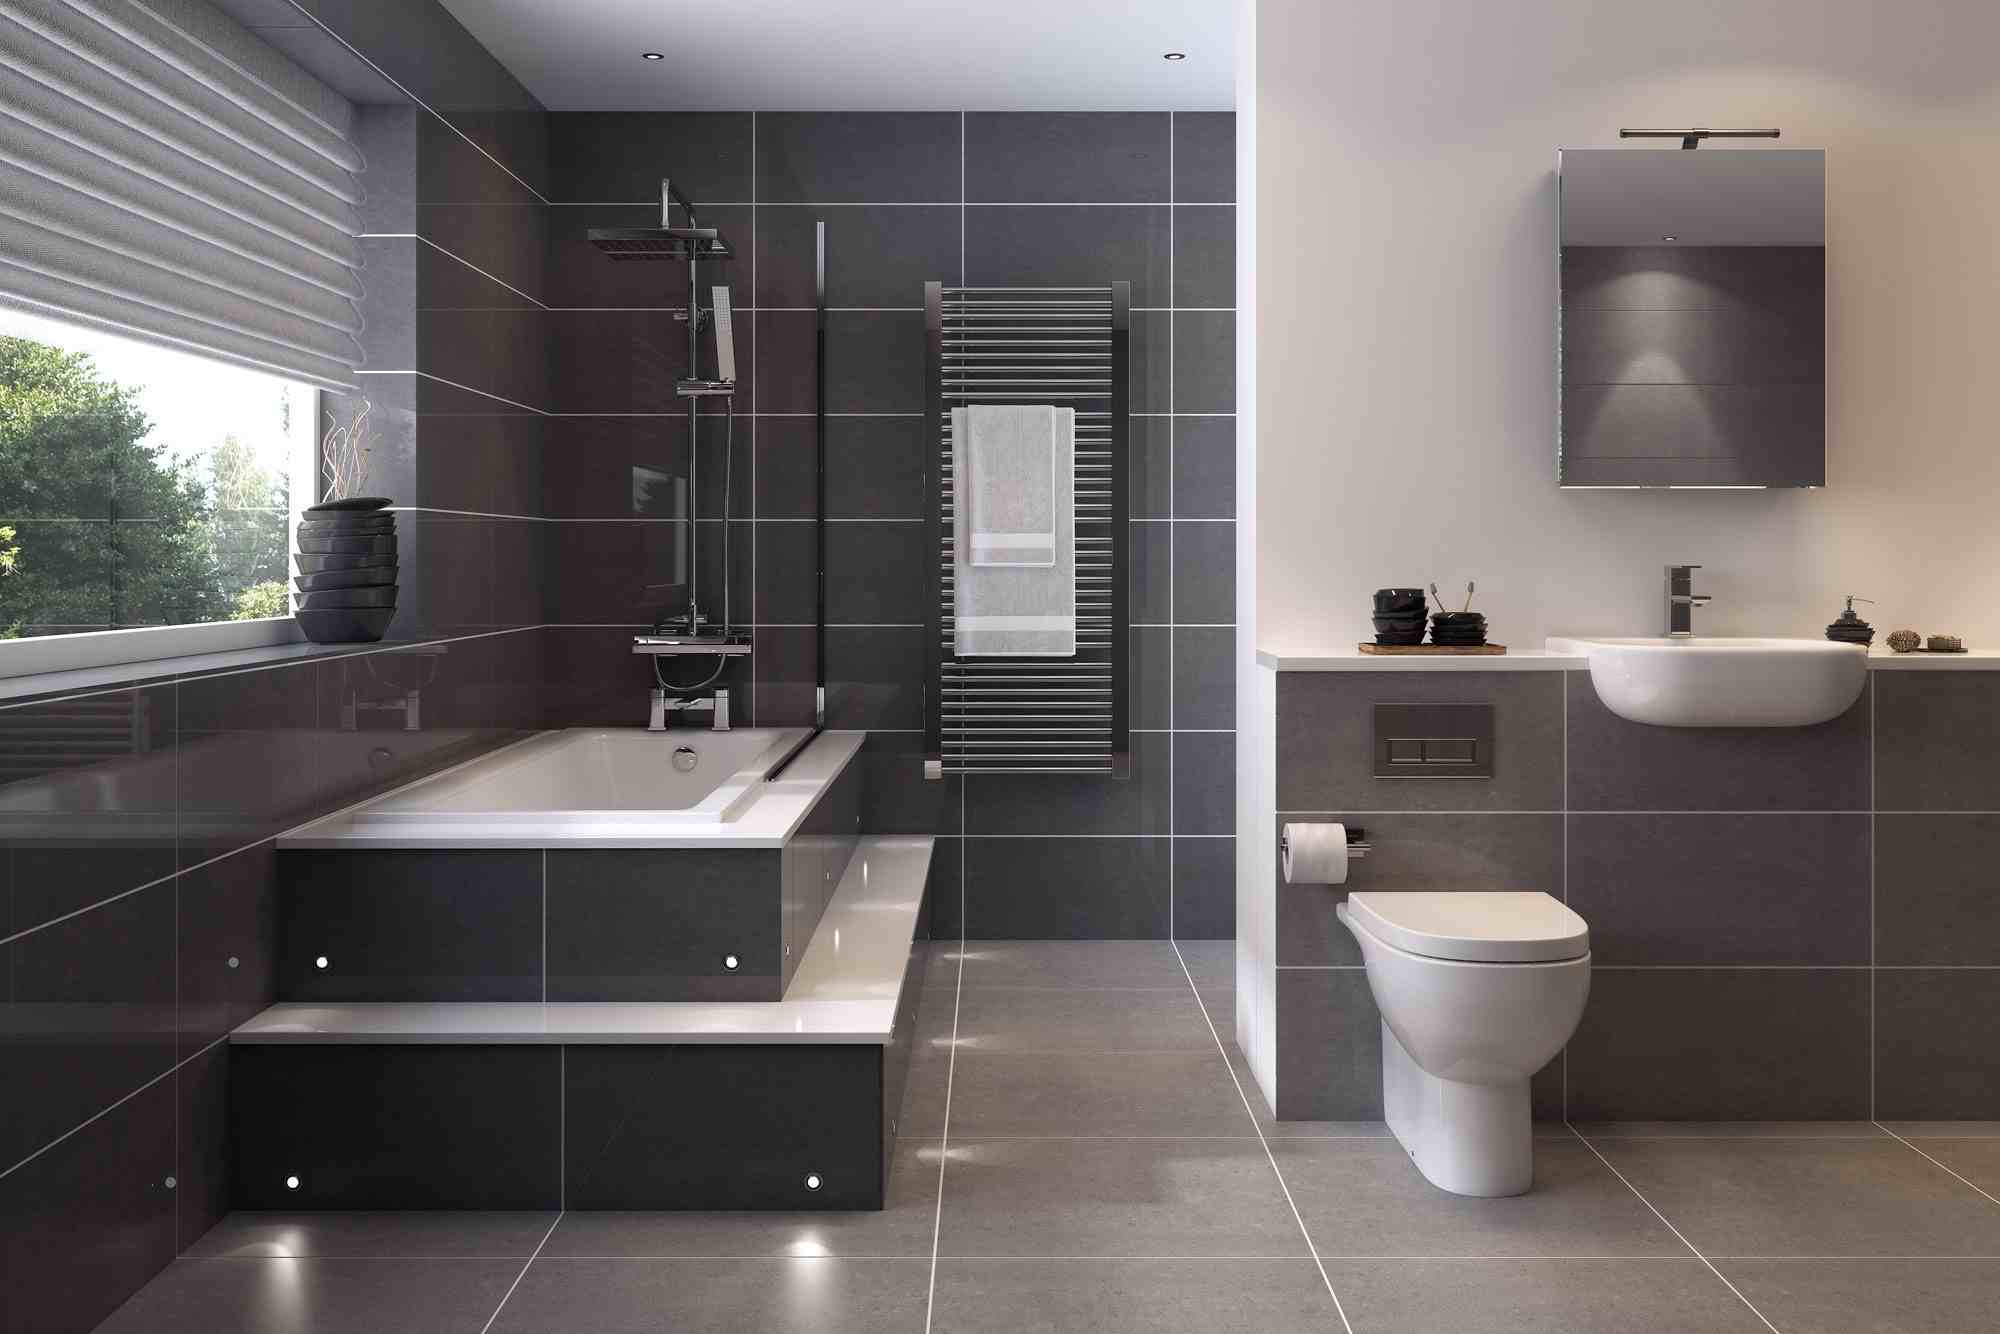 Badezimmer in Grau einrichten modern Badfliesen Wandspiegel Badewanne Design Ideen